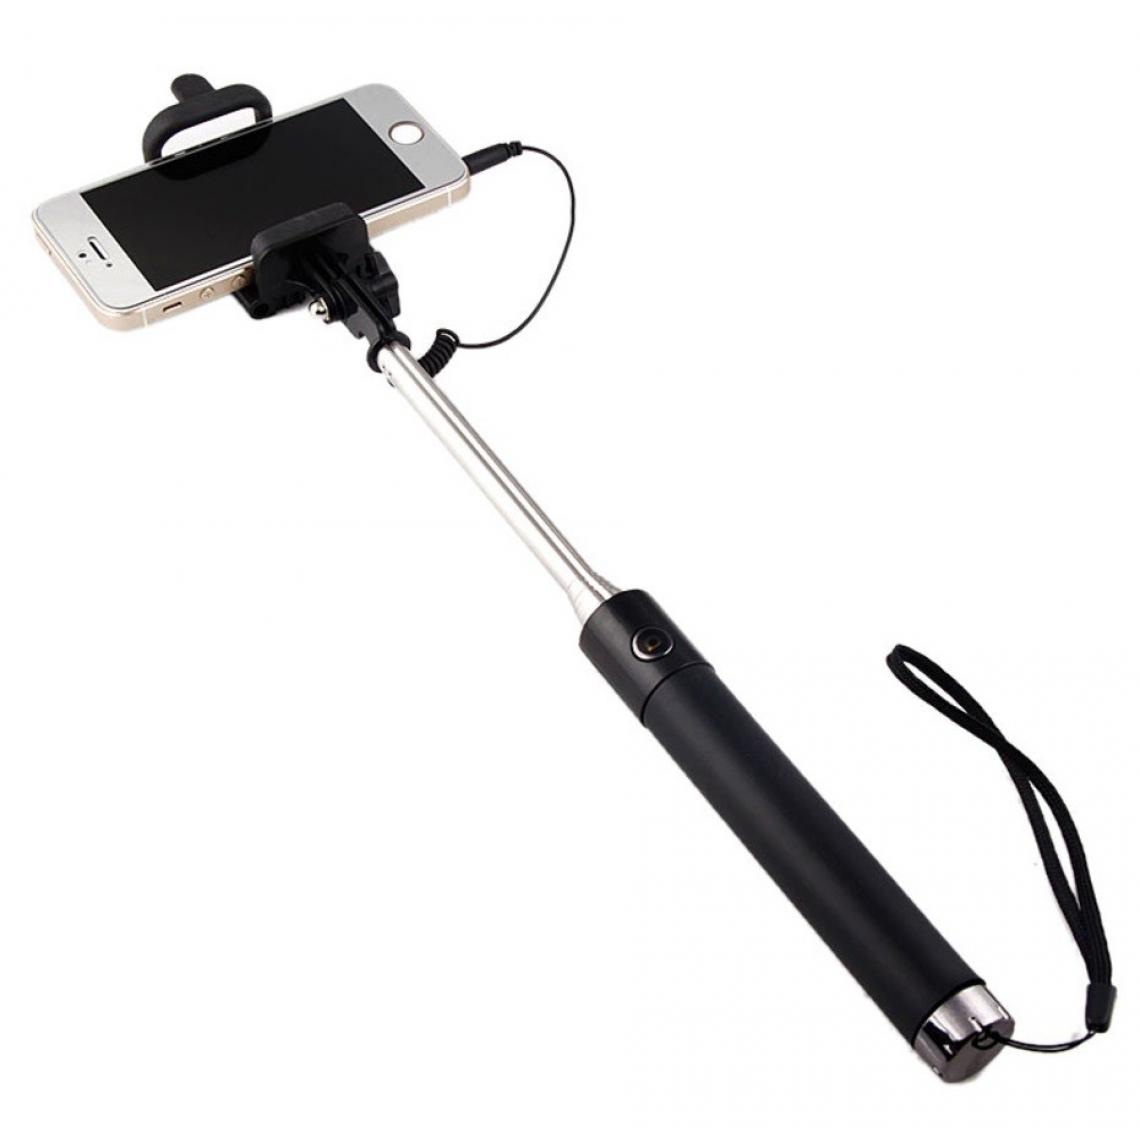 Shot - Perche Selfie Metal pour ALCATEL 1 2019 Smartphone avec Cable Jack Selfie Stick Android IOS Reglable Bouton Photo (NOIR) - Autres accessoires smartphone